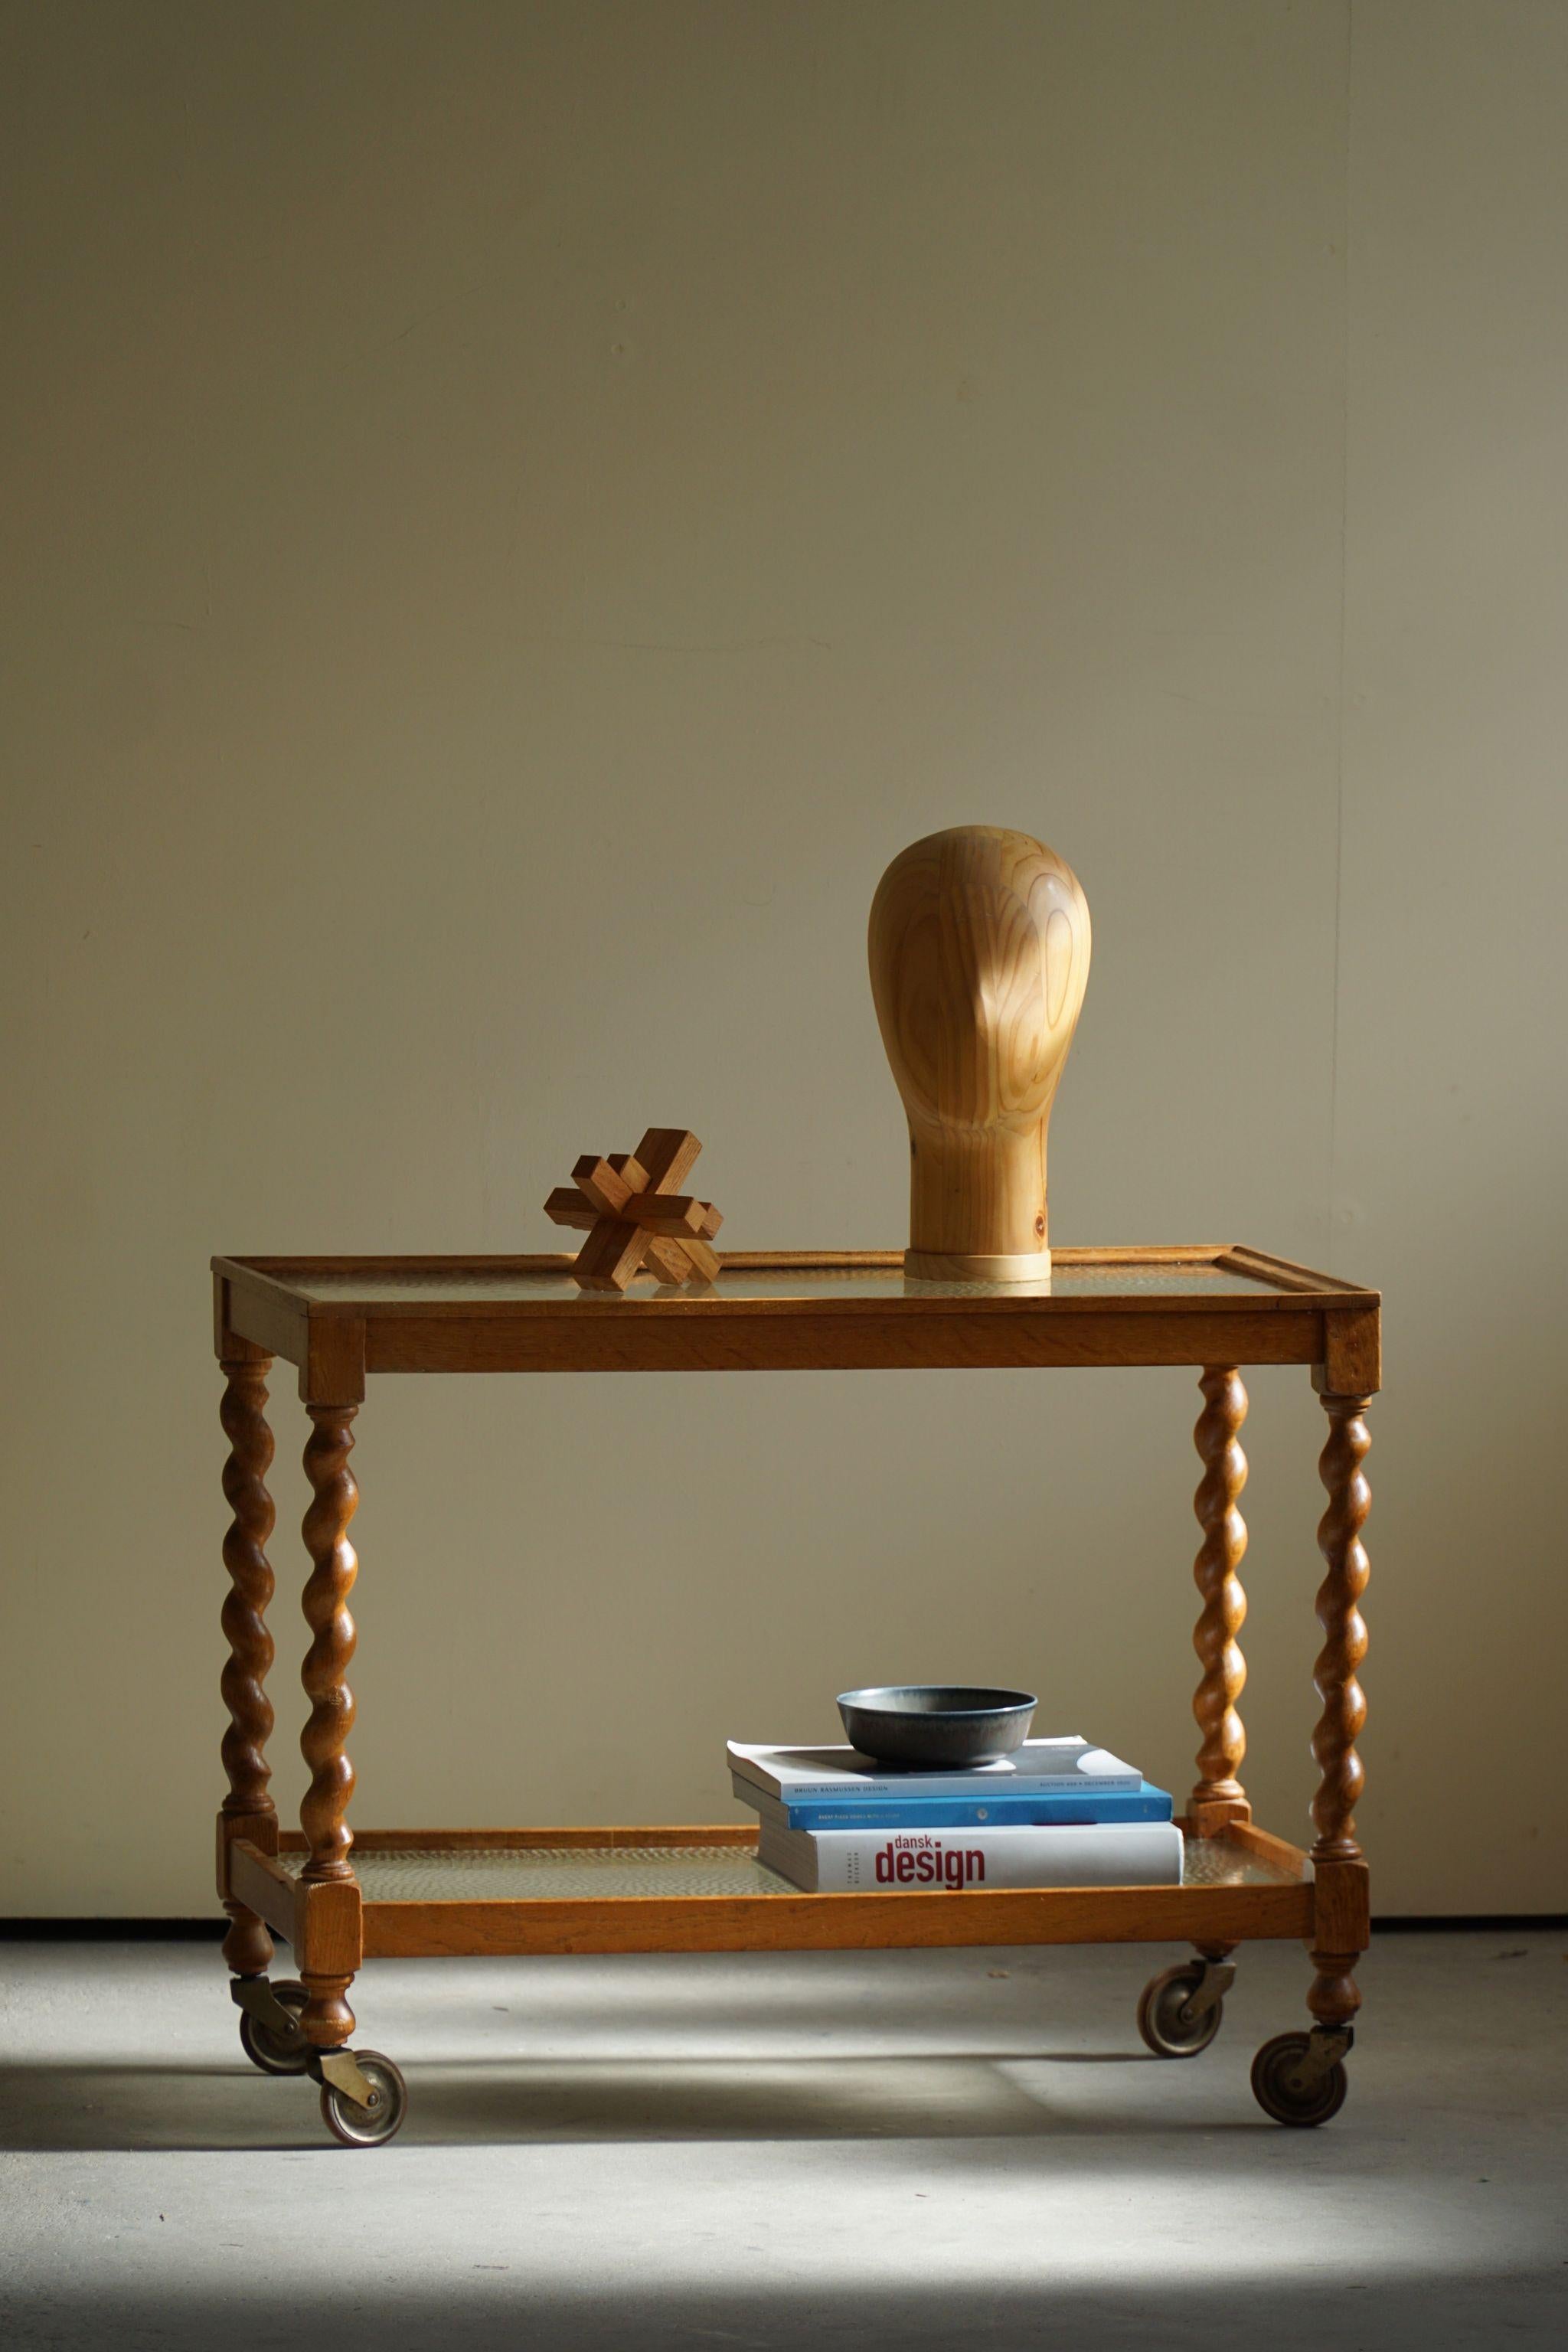 Dieser wunderschöne Serviertisch aus Eiche mit gedrehten Beinen ist ein schönes Beispiel für die dänische Handwerkskunst des frühen 20. Jahrhunderts. Er ist fachmännisch aus hochwertigem Eichenholz gefertigt und besticht durch sein elegantes und